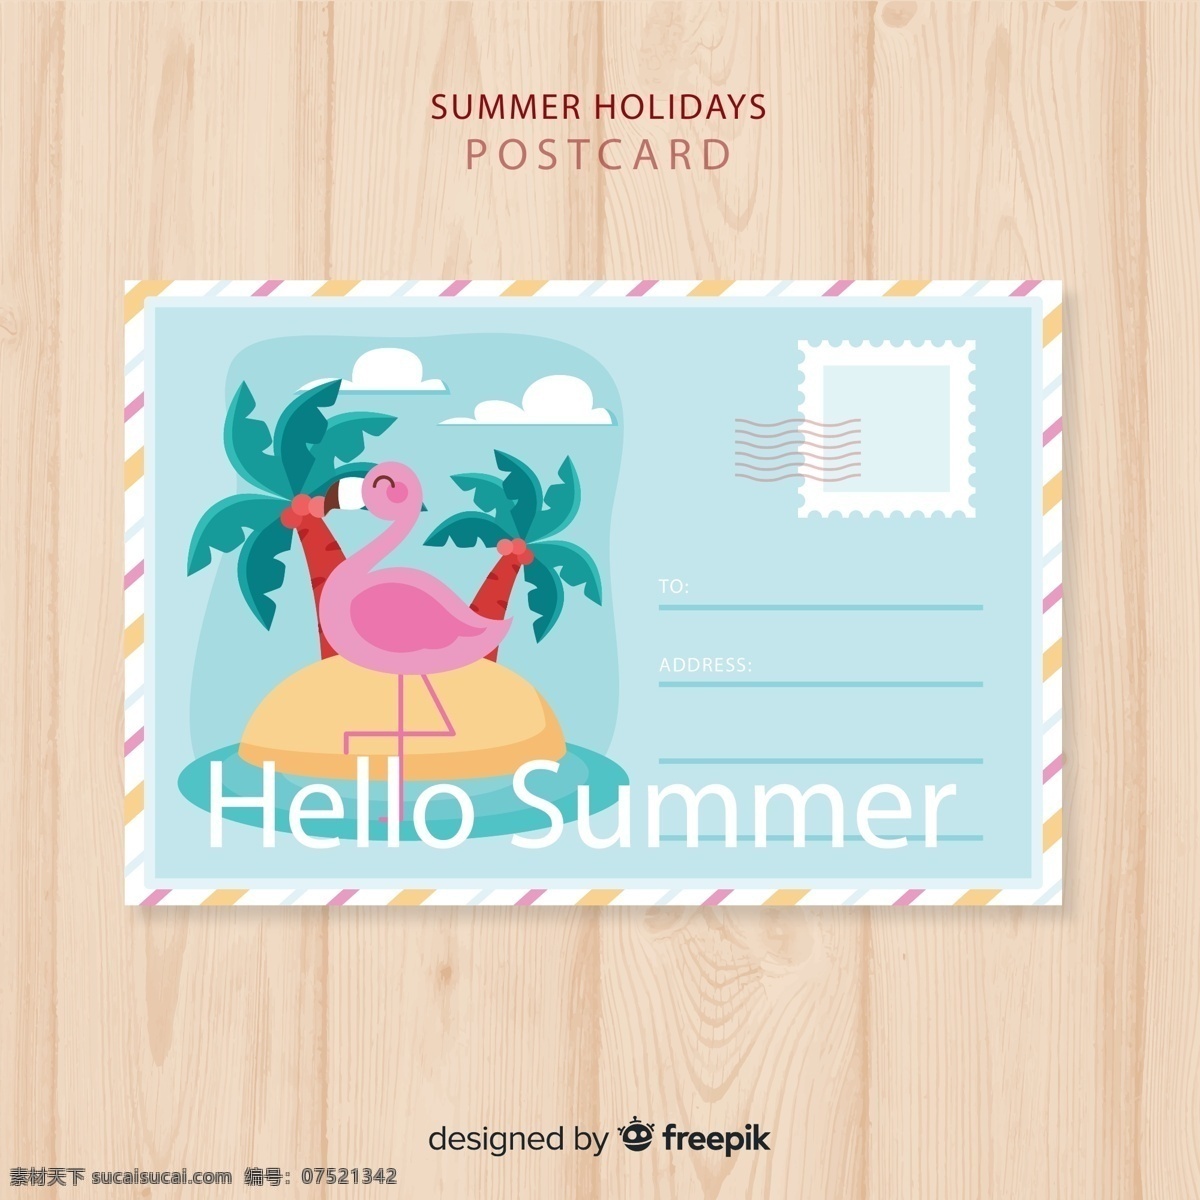 夏季 假期 明信片 大海 椰子树 岛屿 木板 创意 火烈鸟 矢量 高清图片